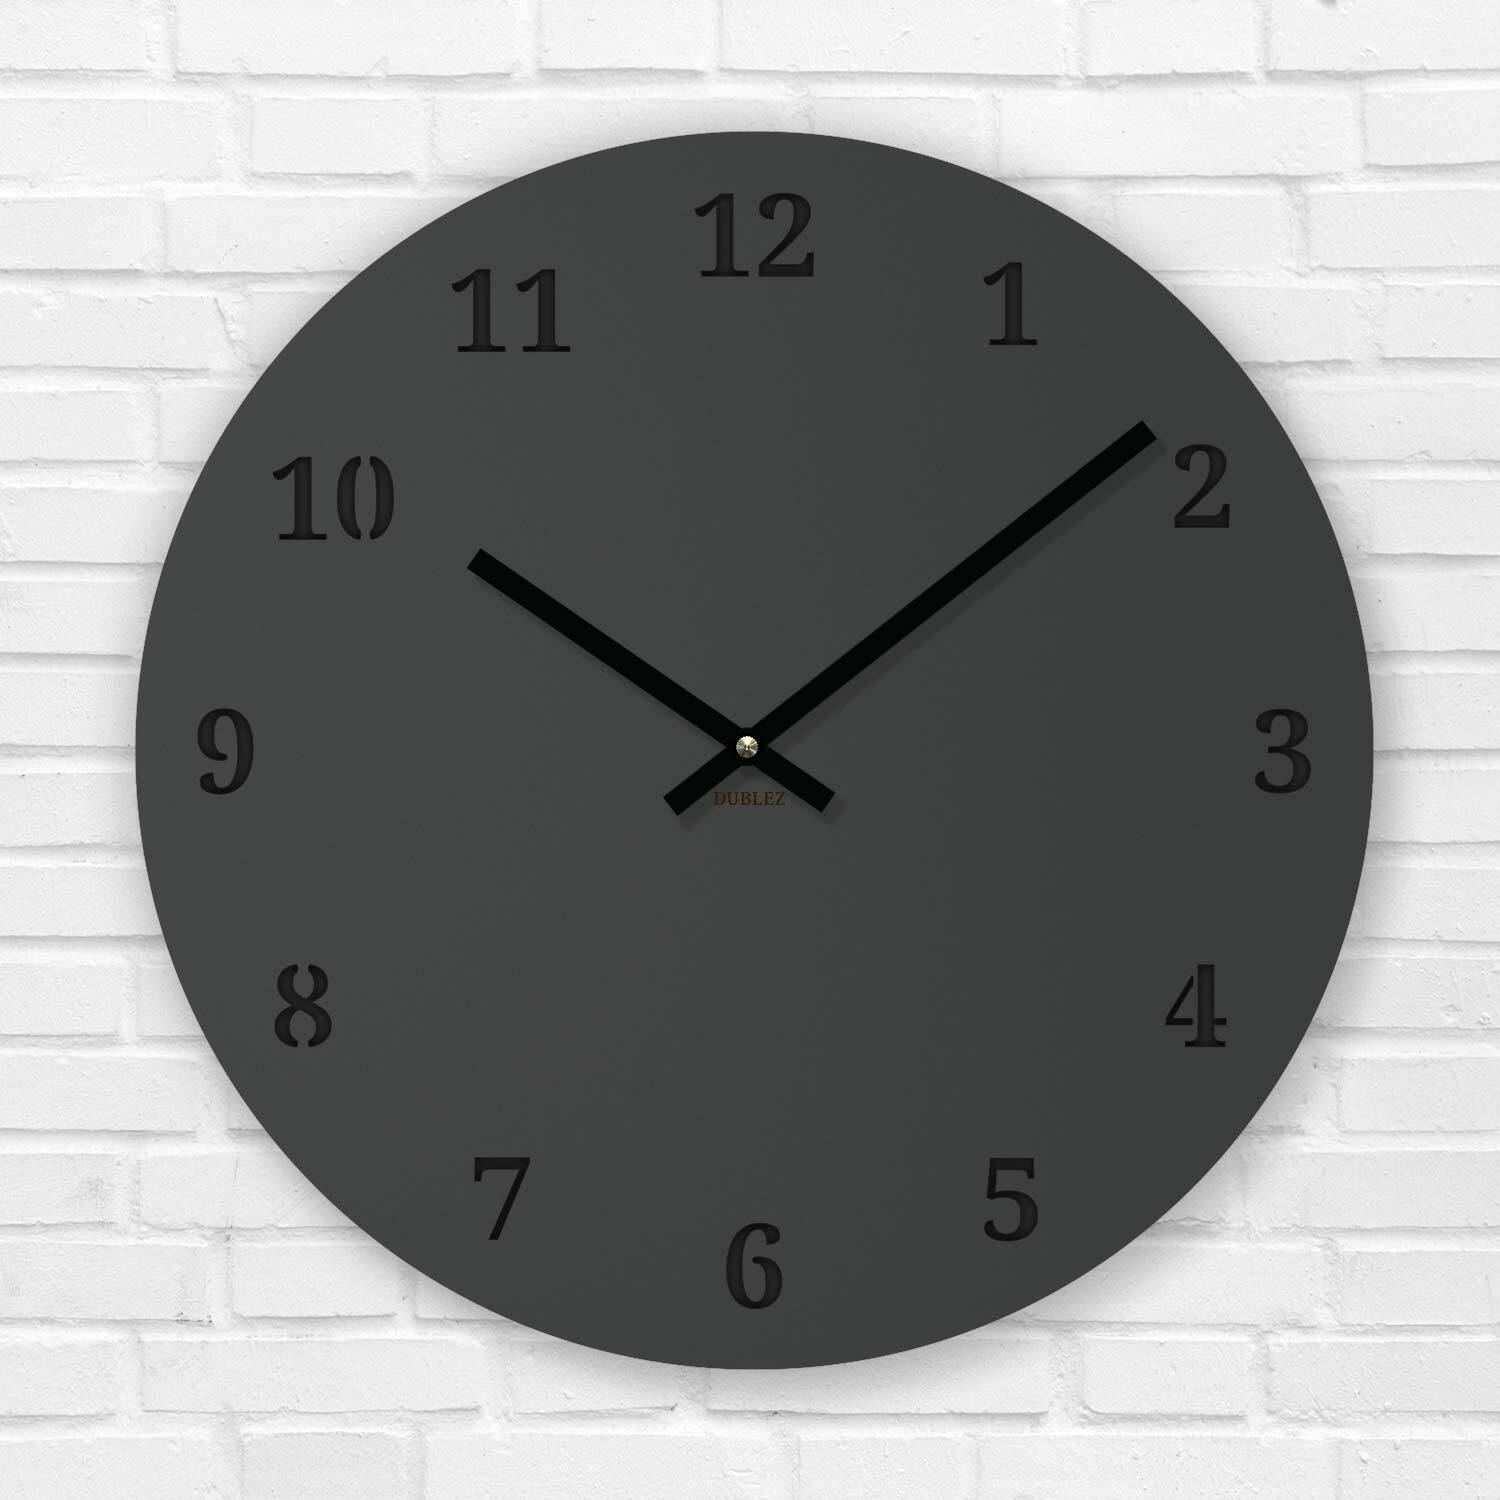 Designové nástěnné hodiny - Basic